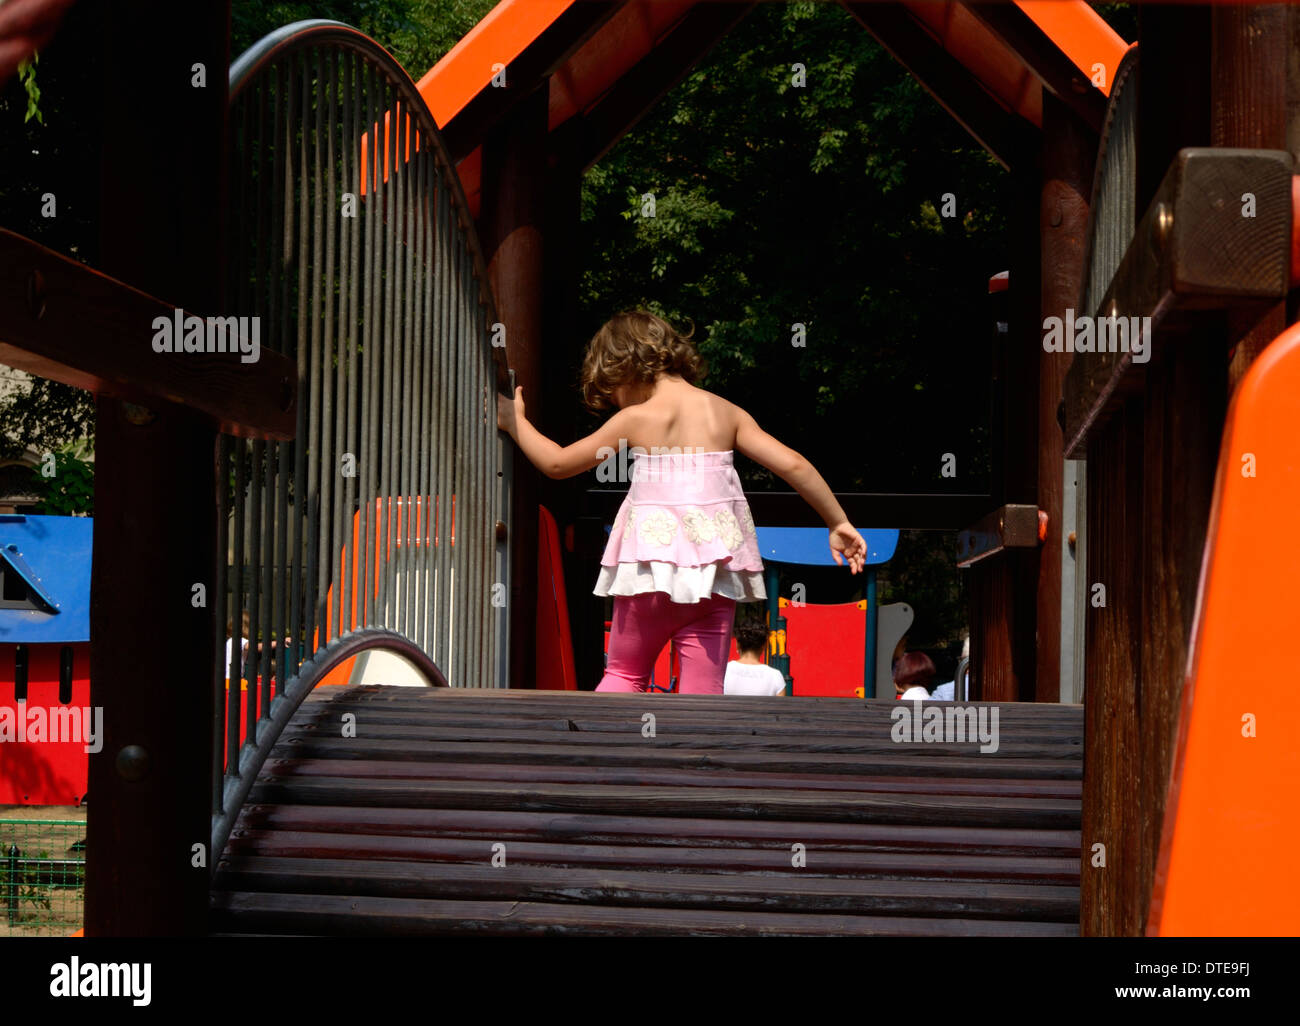 Petite fille marchait sur le pont - aire de Subotica Serbie Banque D'Images